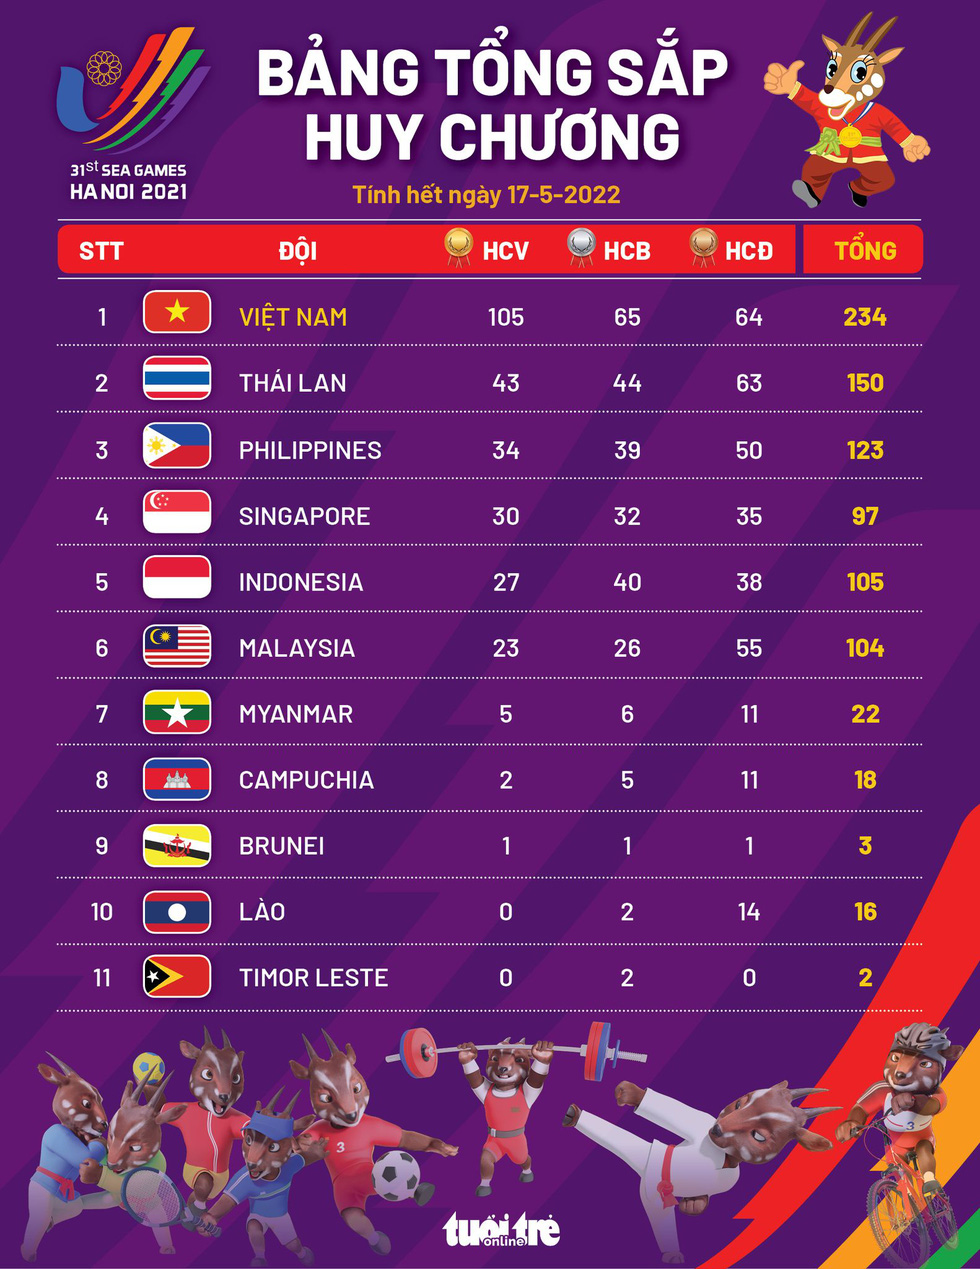 Bảng tổng sắp huy chương SEA Games 31 ngày 17-5: Việt Nam vượt mốc 100 HCV, 234 huy chương các loại - Ảnh 1.